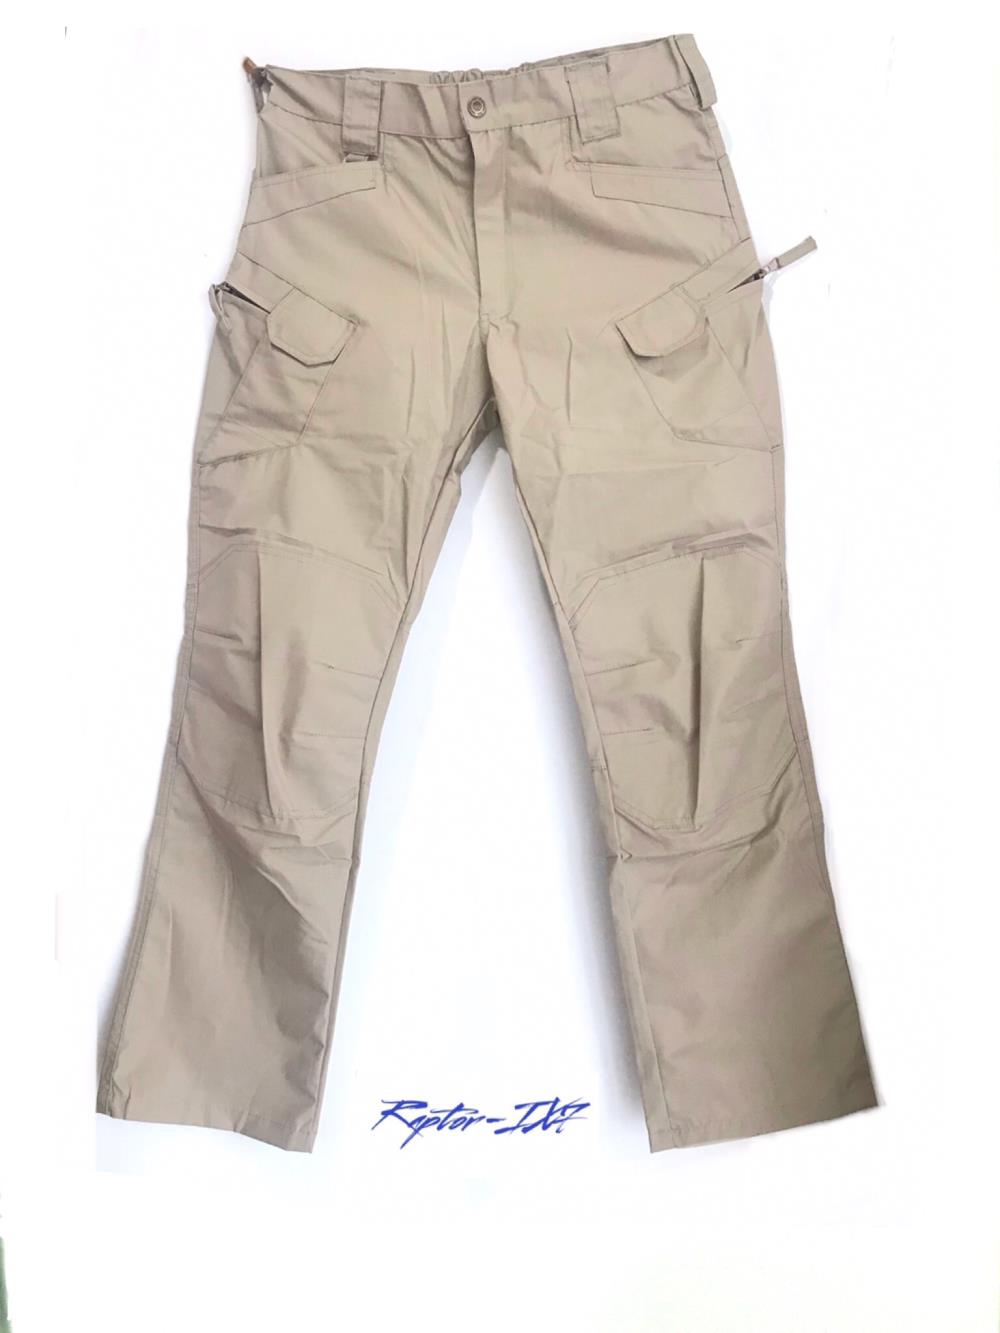 กางเกง TACTICAL ,กางเกง TACTICAL,RAPTOR,Plant and Facility Equipment/Safety Equipment/Protective Clothing